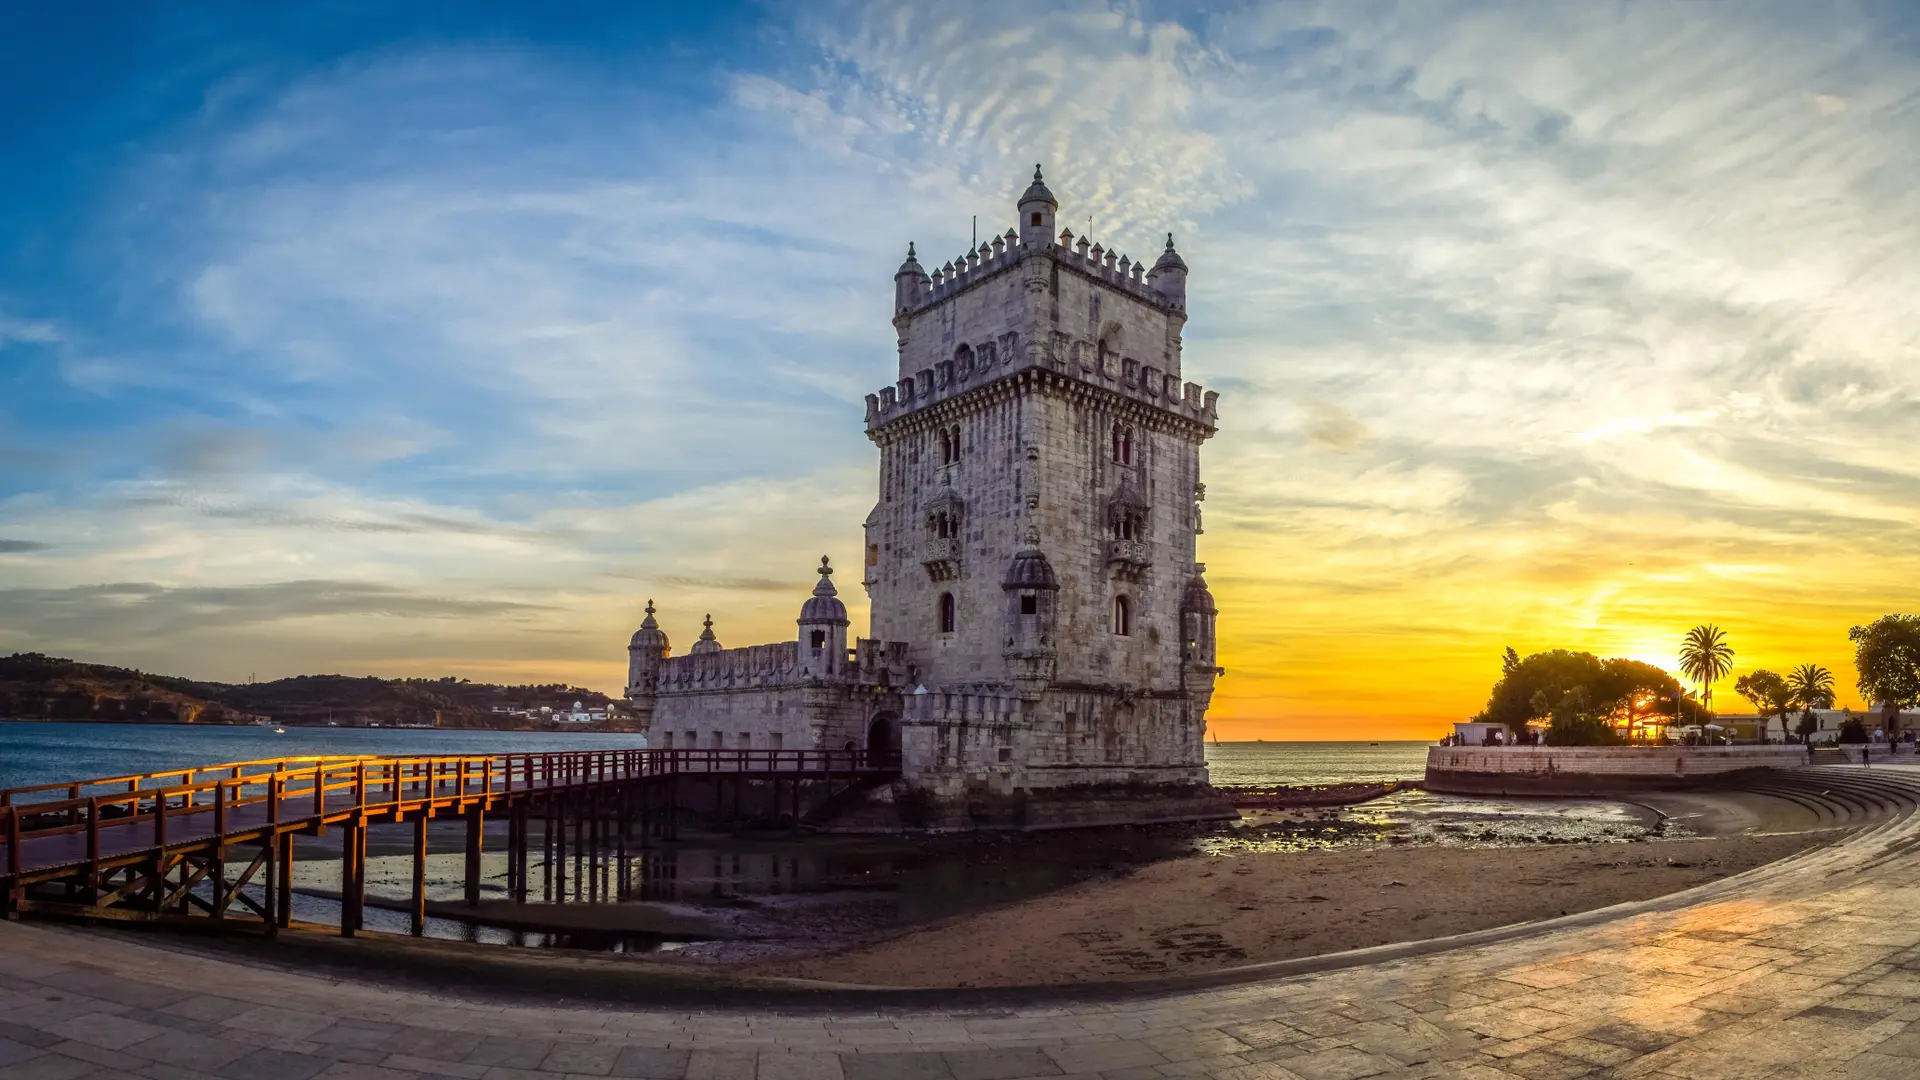 Destinations Articles - Lisbon Travel Guide